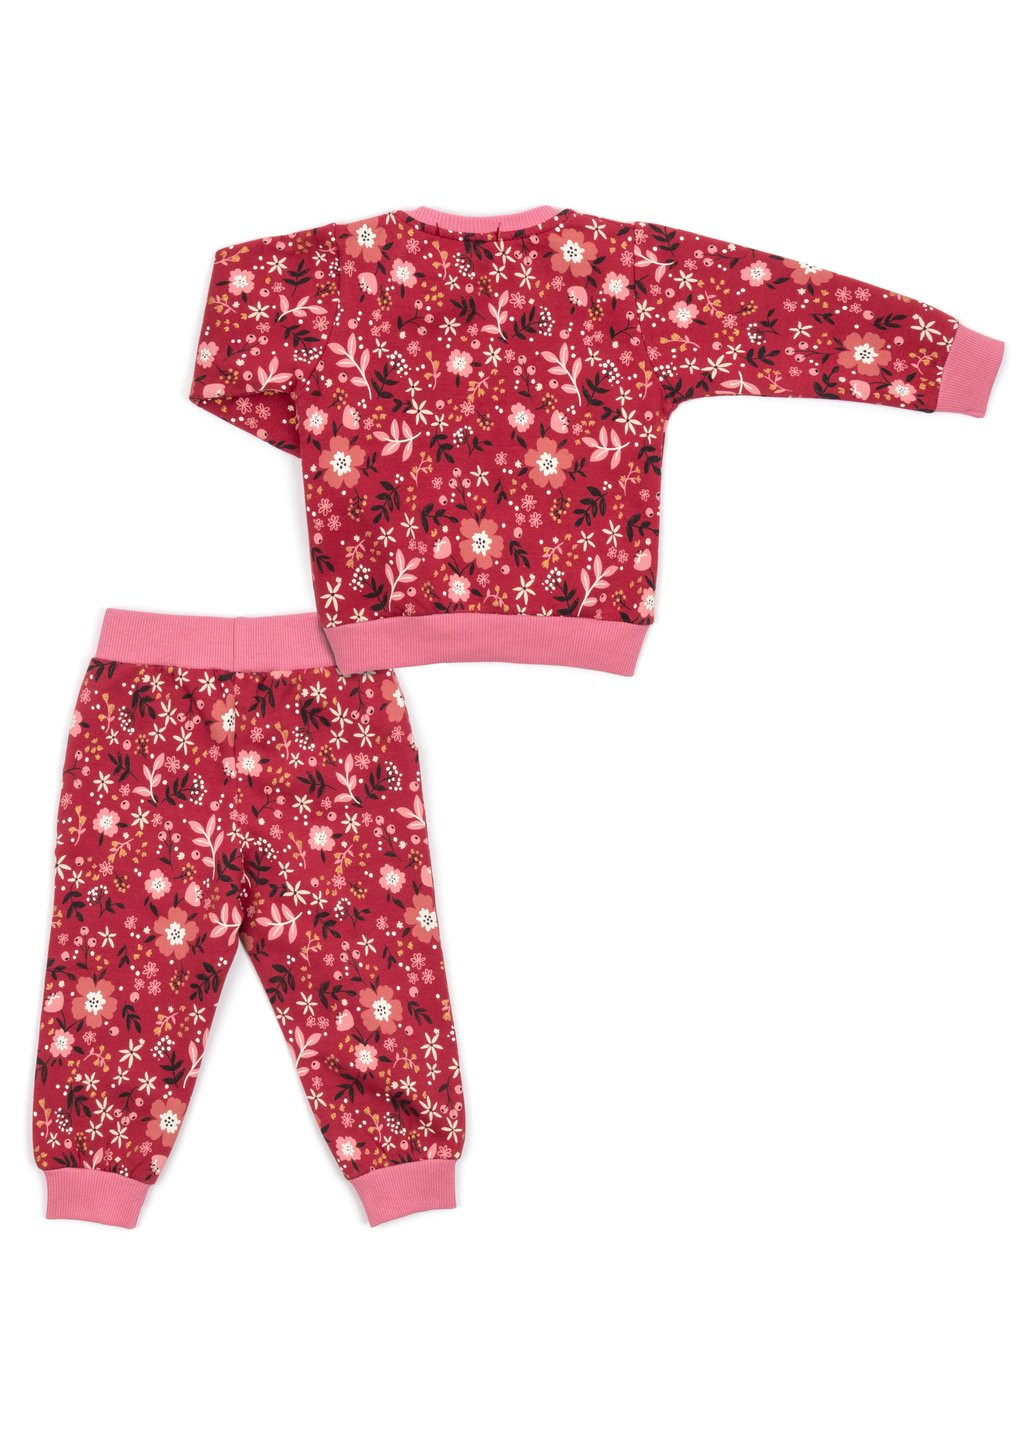 Комбинированный демисезонный набор детской одежды на флисе (17306-104g-red) Breeze